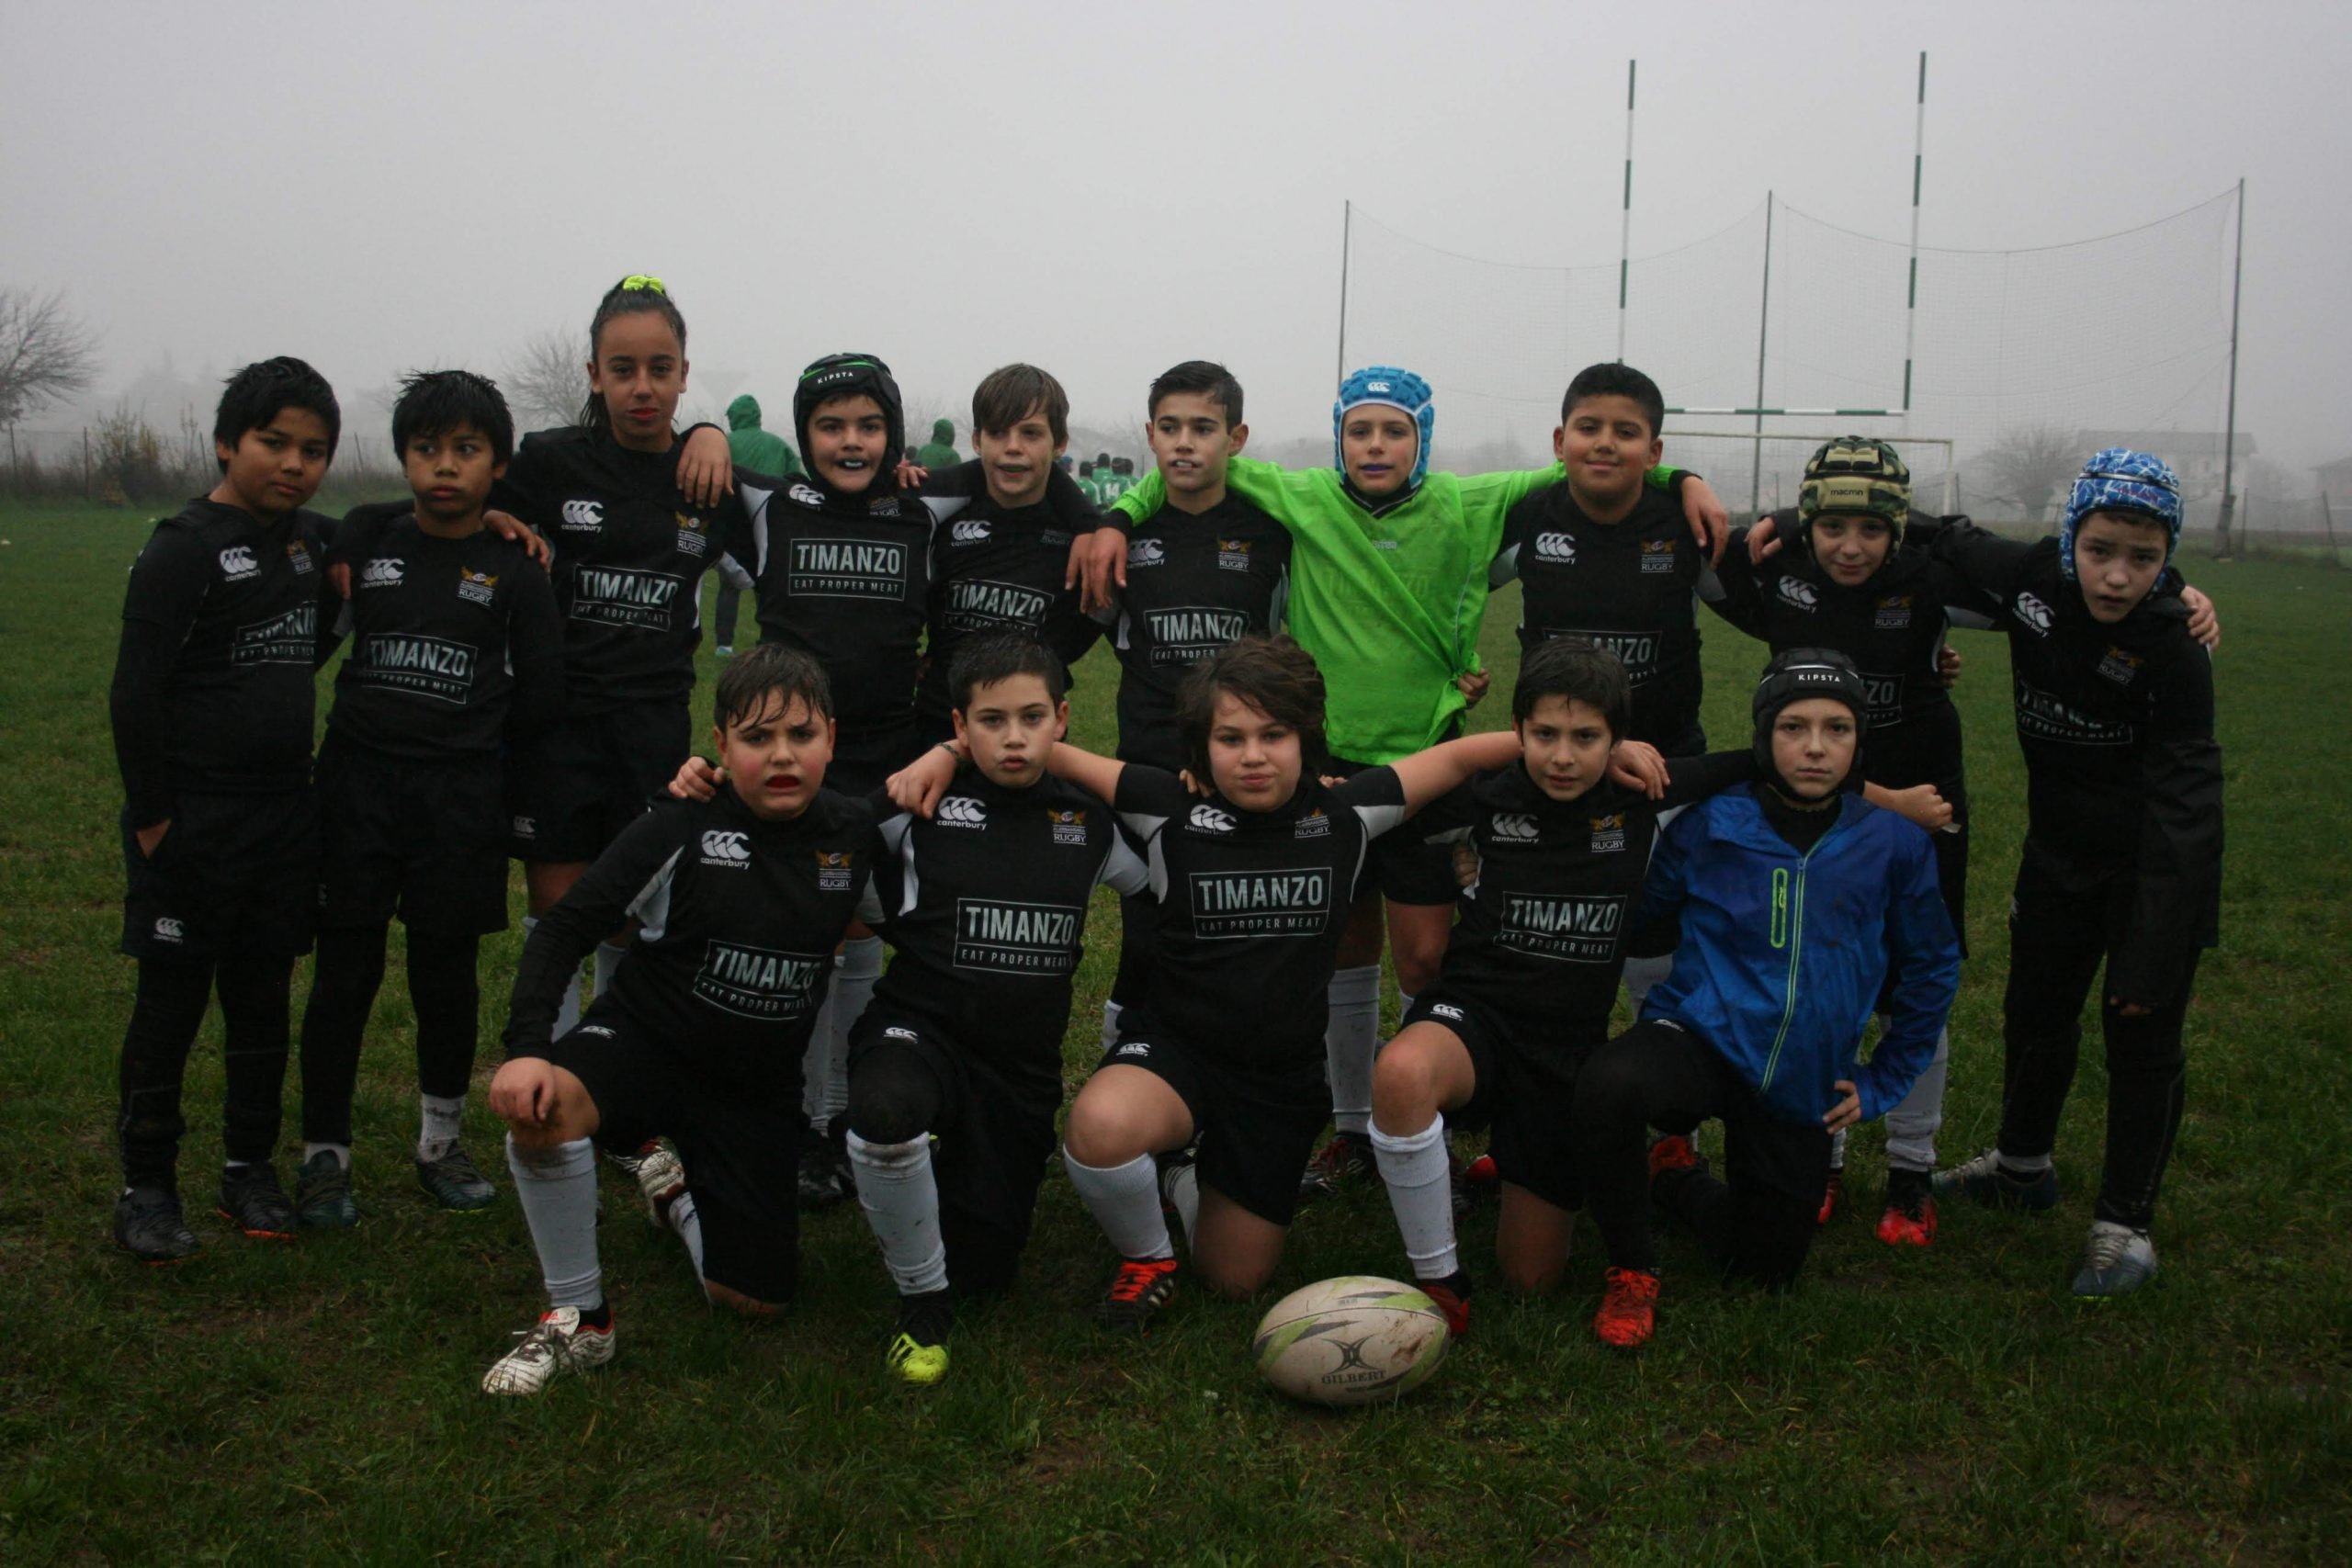 Alessandria Rugby: i match del settore giovanile nel fine settimana